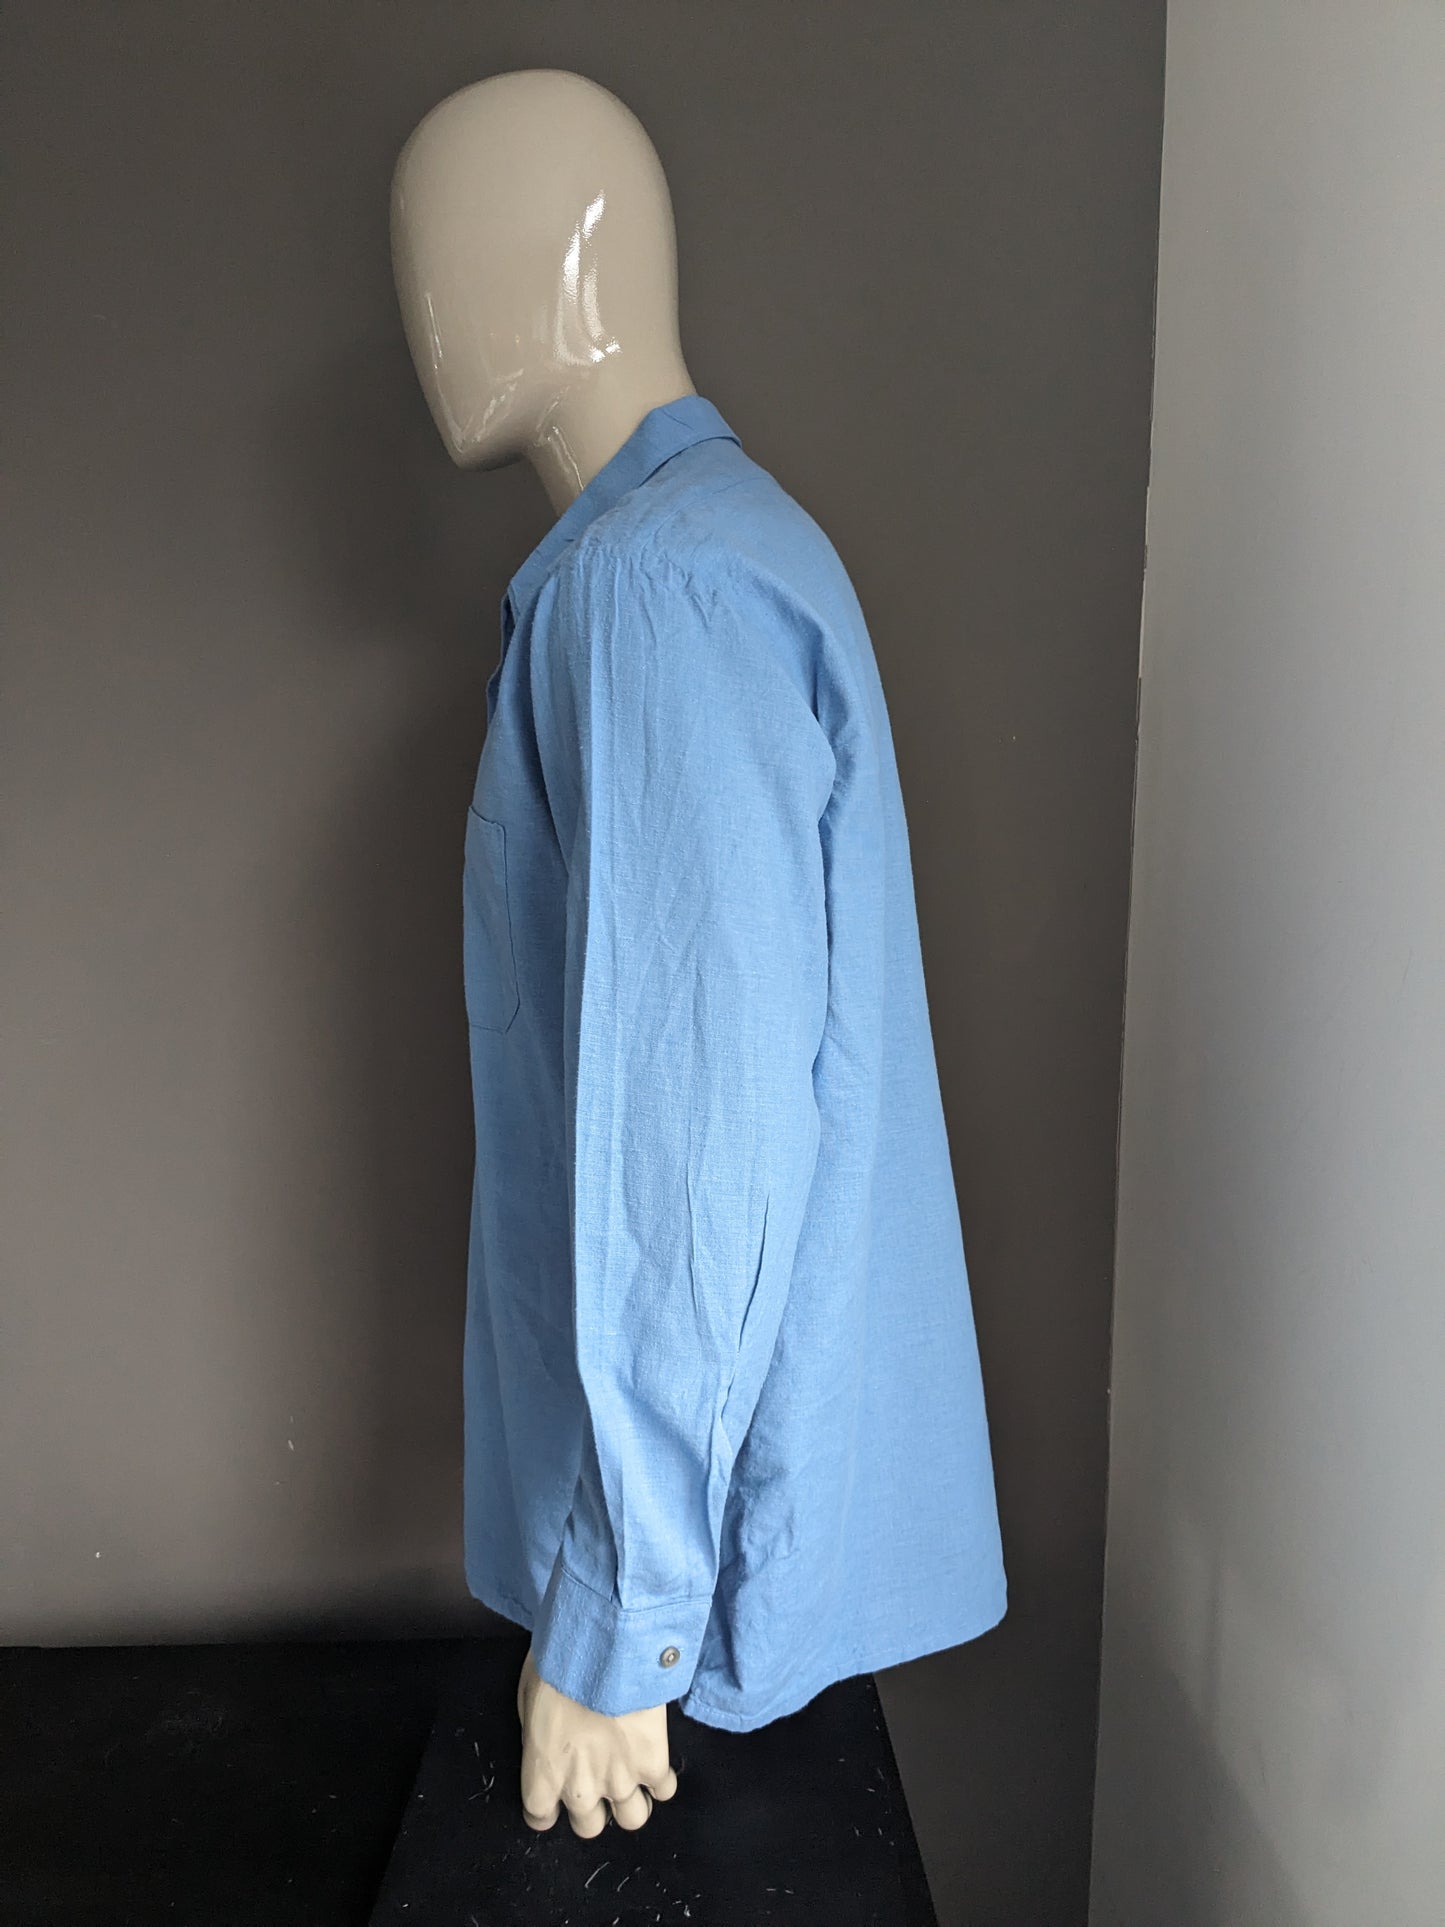 Camisa de los 70 vintage con cuello puntual. Color azul. Tamaño 2xl / xxl.